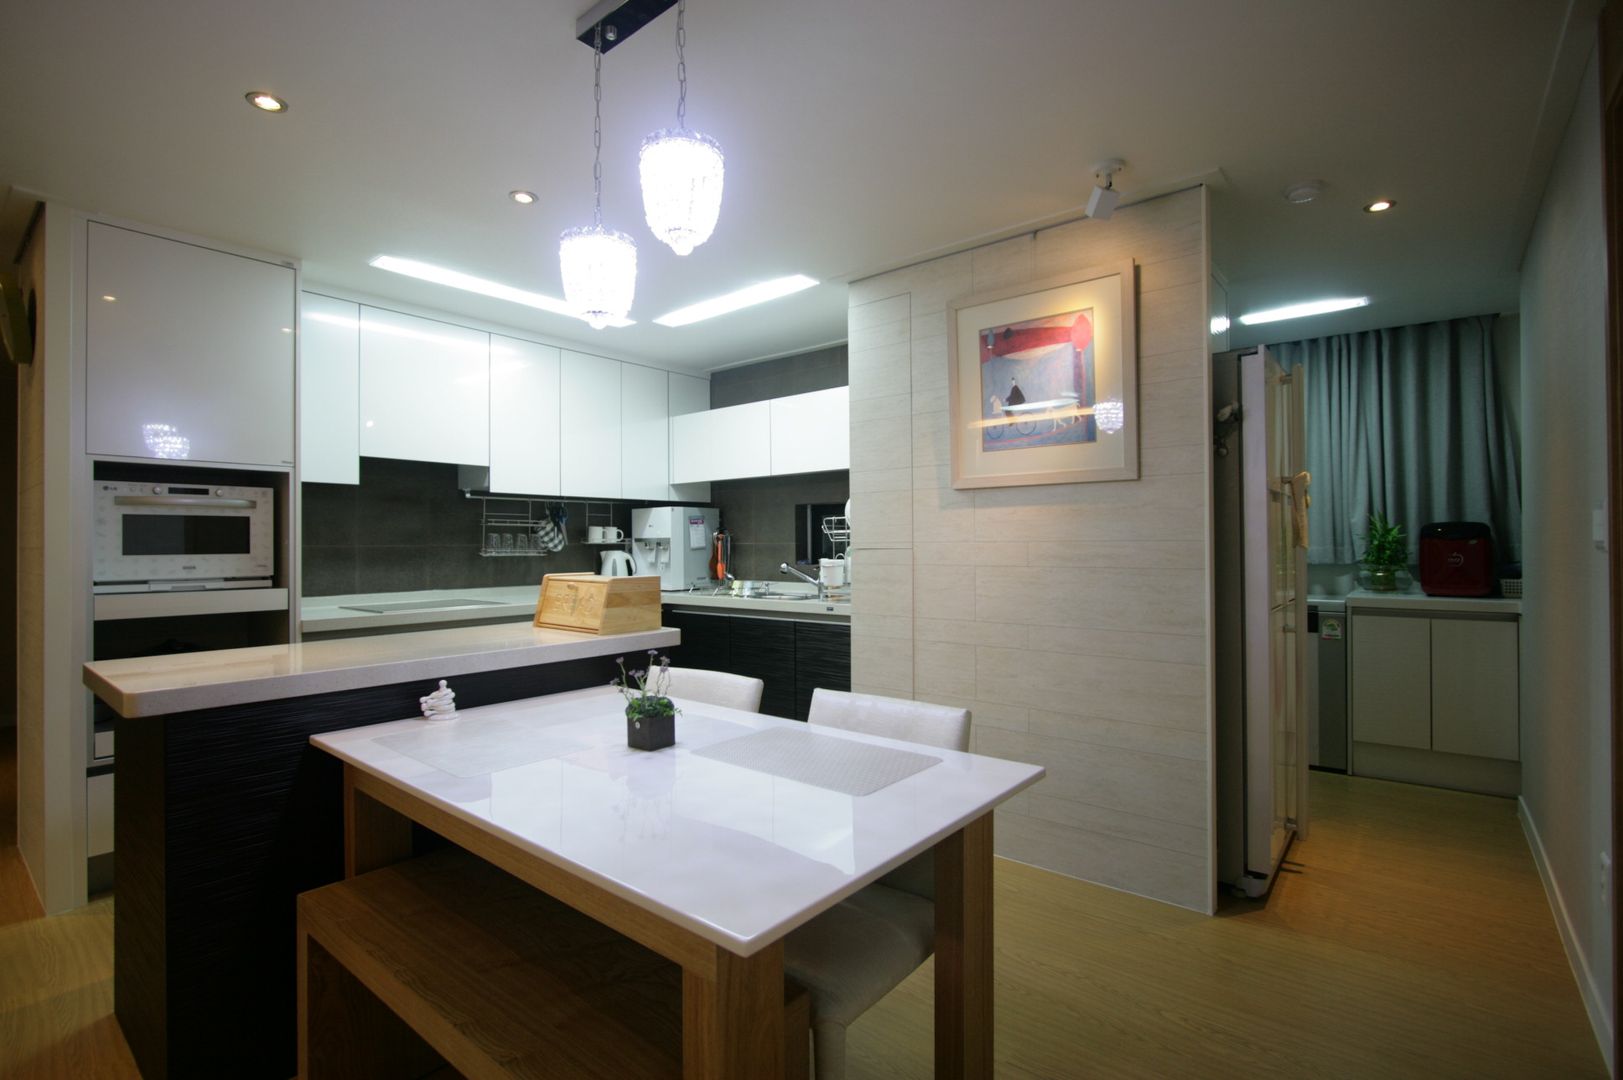 호텔식 트윈룸_34py, 홍예디자인 홍예디자인 Modern kitchen